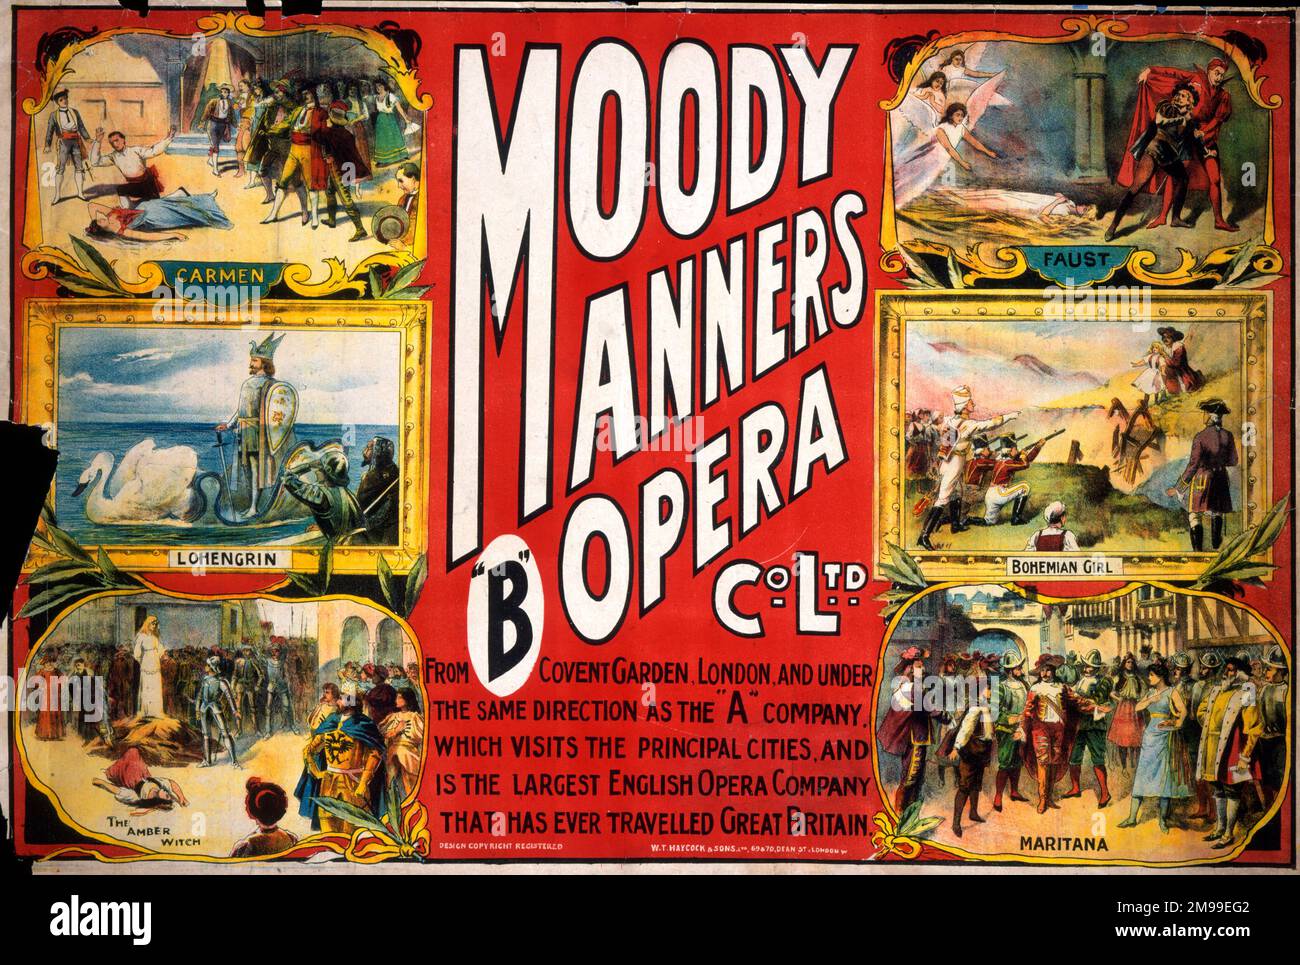 Theaterposter, Moody Manners Opera Company, aus Covent Garden, London, auf einer Reise zu den wichtigsten Städten mit Produktionen wie Carmen, Lohengrin und Faust. Stockfoto